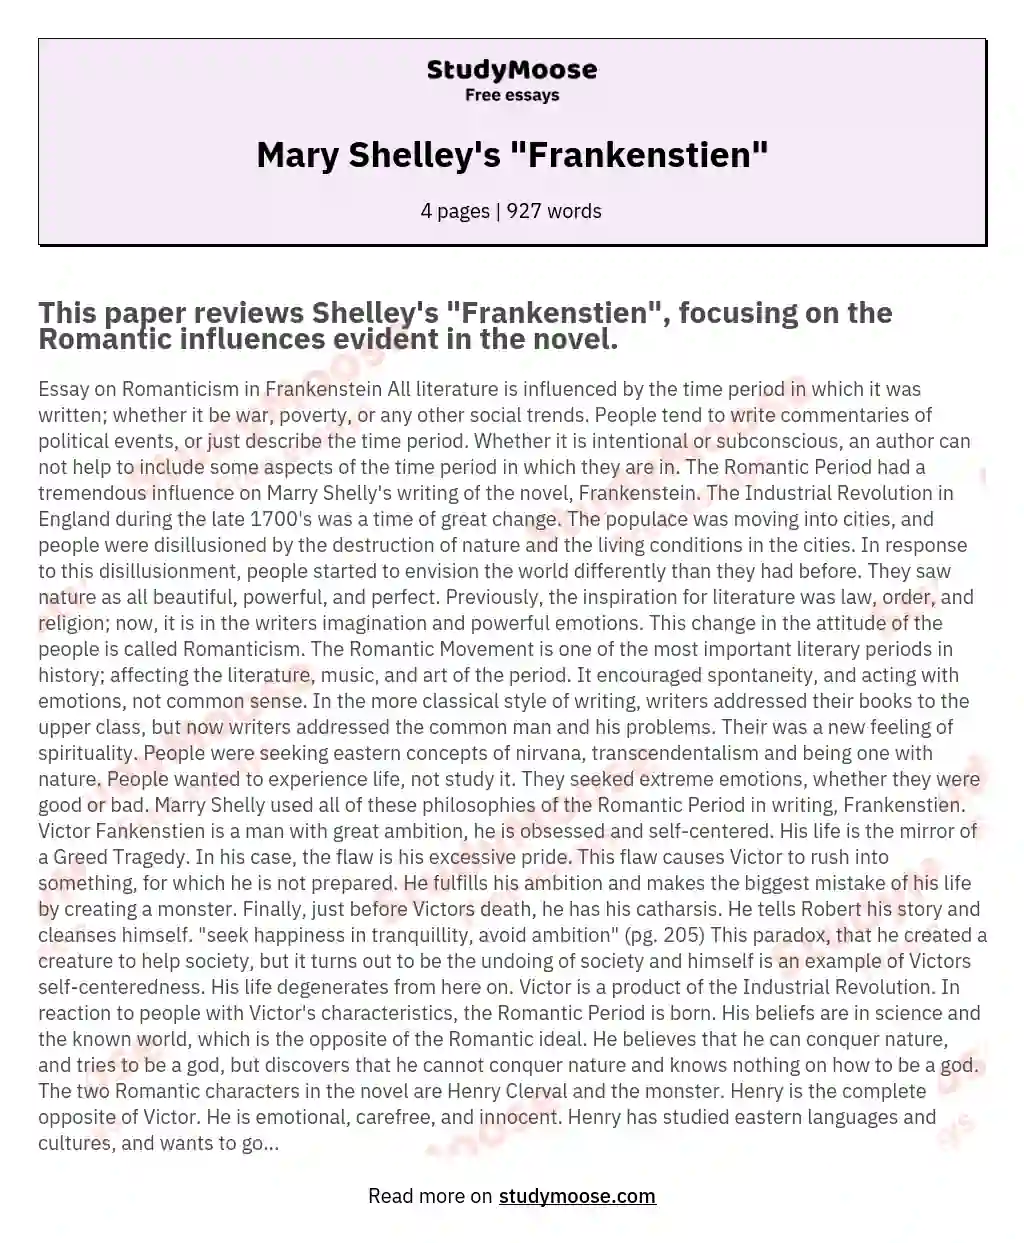 Mary Shelley's "Frankenstien" essay